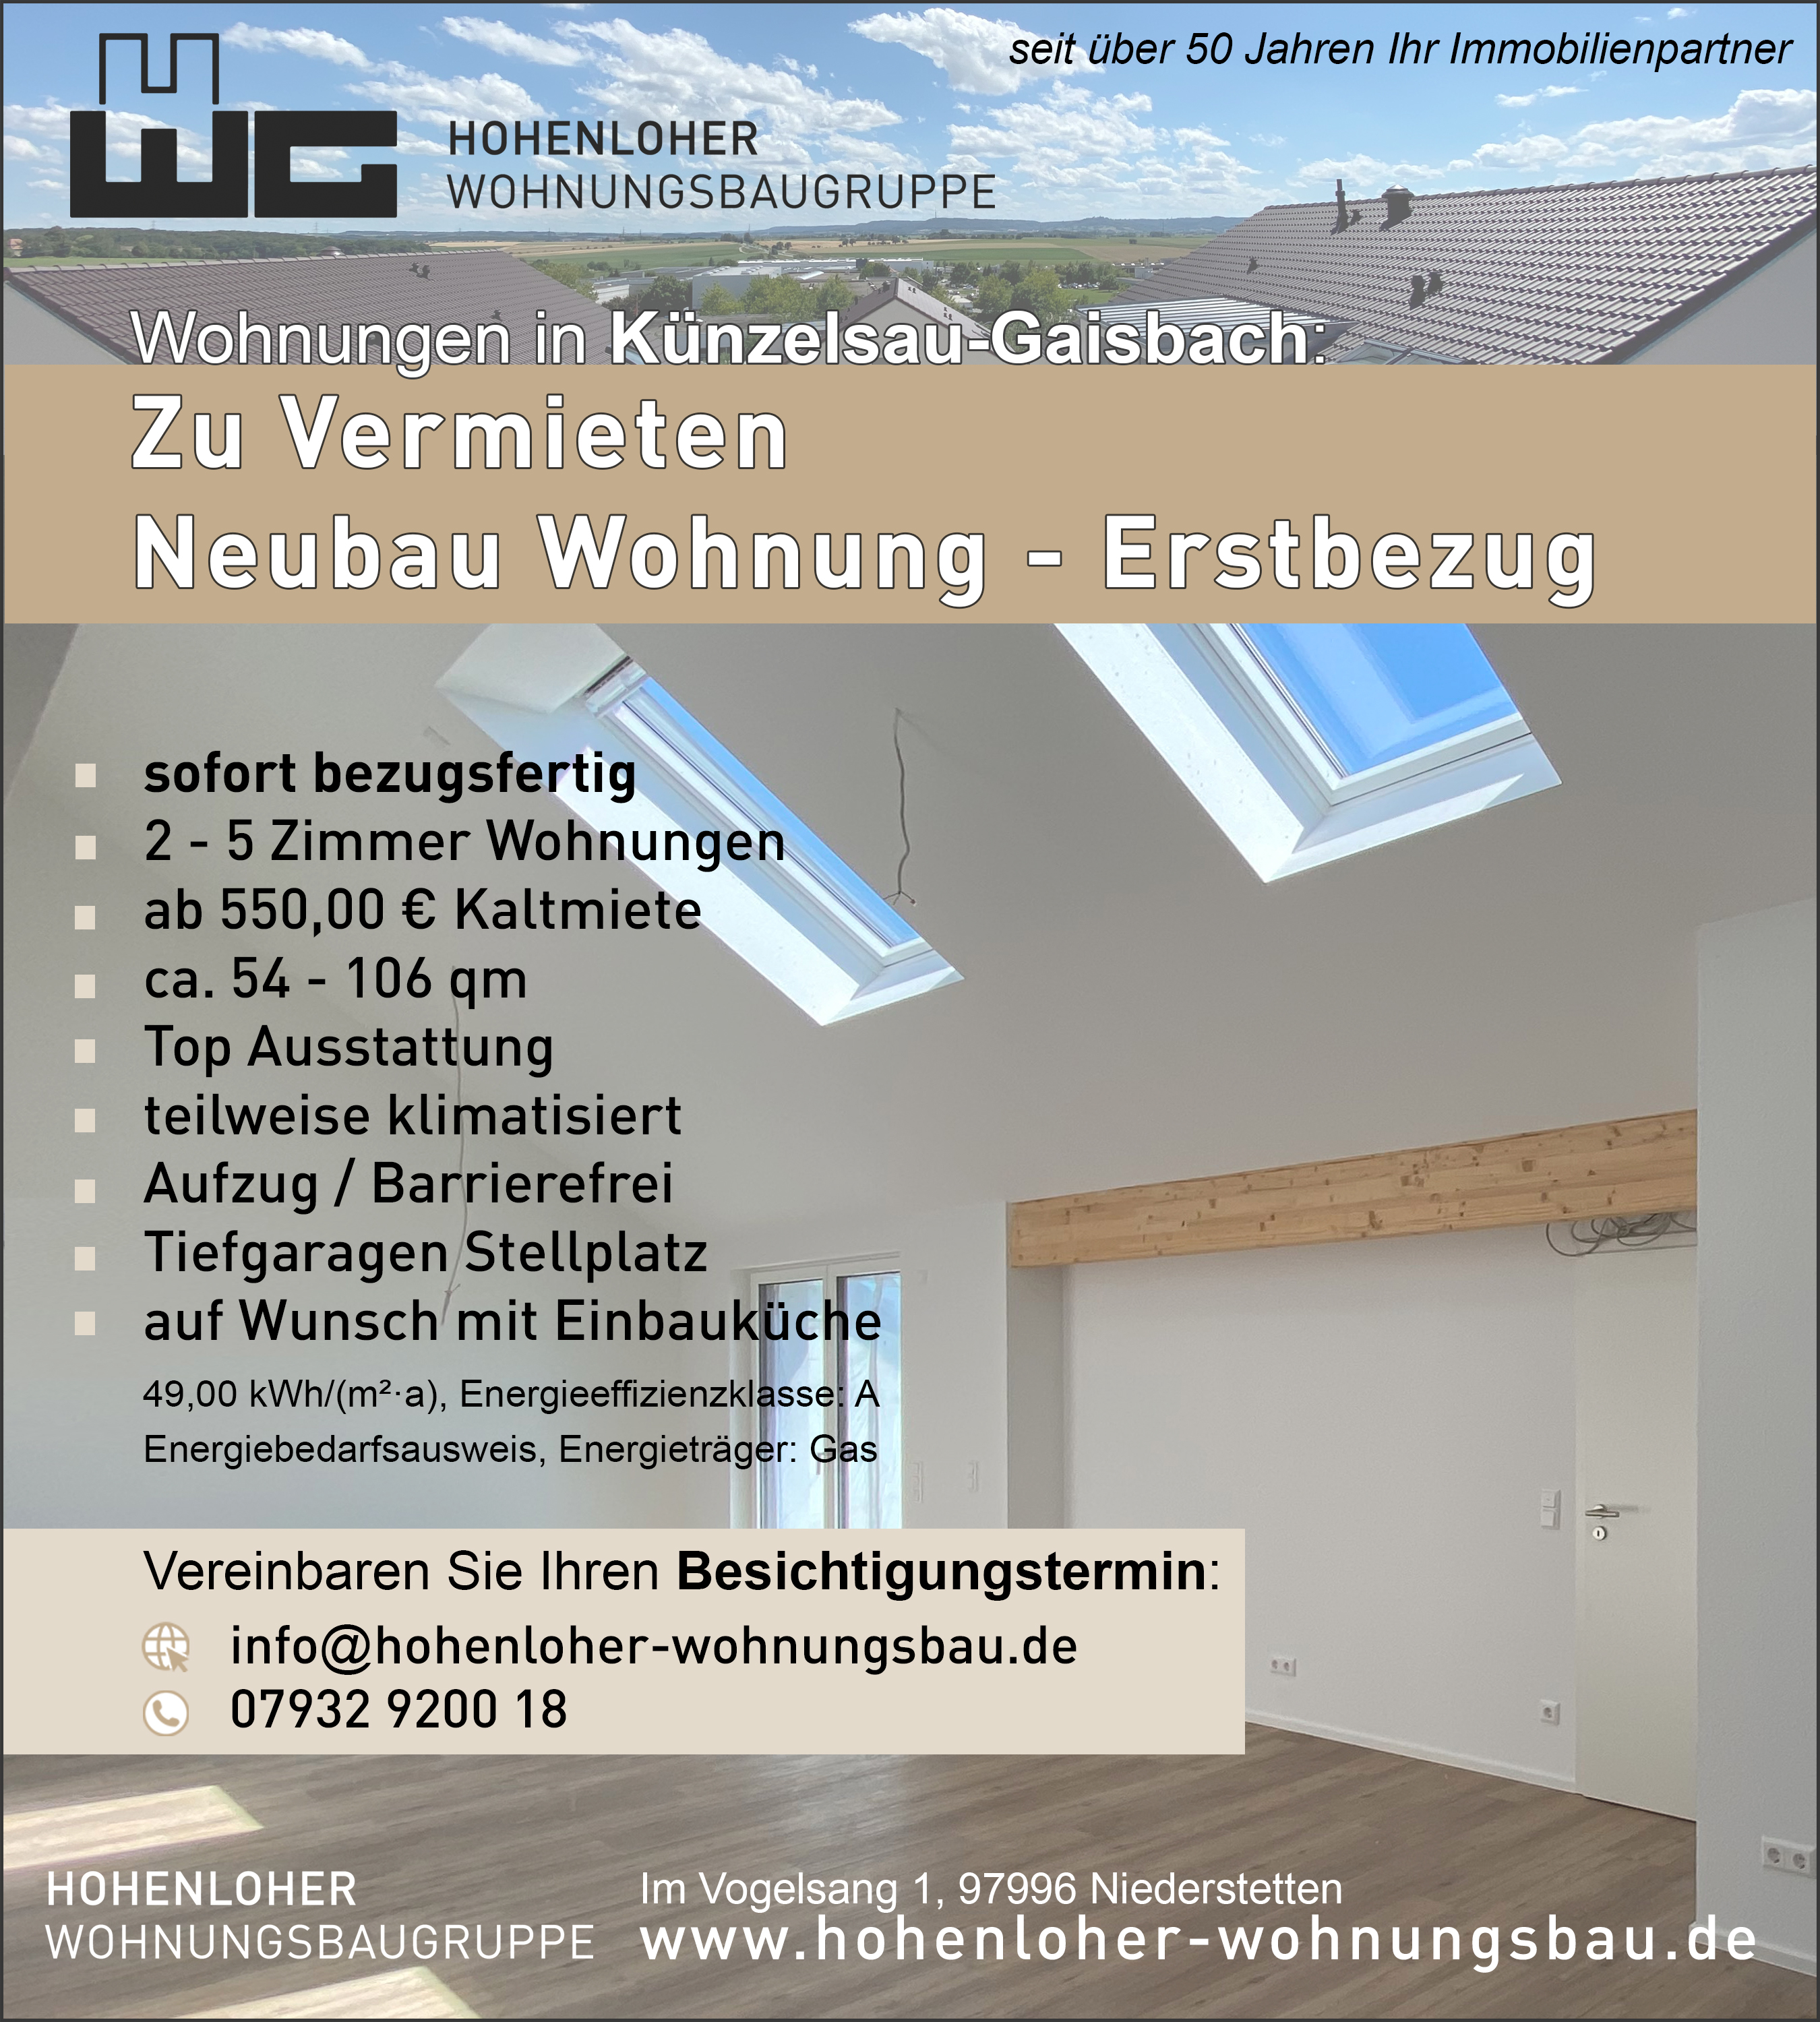 Wohnung in Künzelsau-Gaisbach - Erstbezug / Neubau